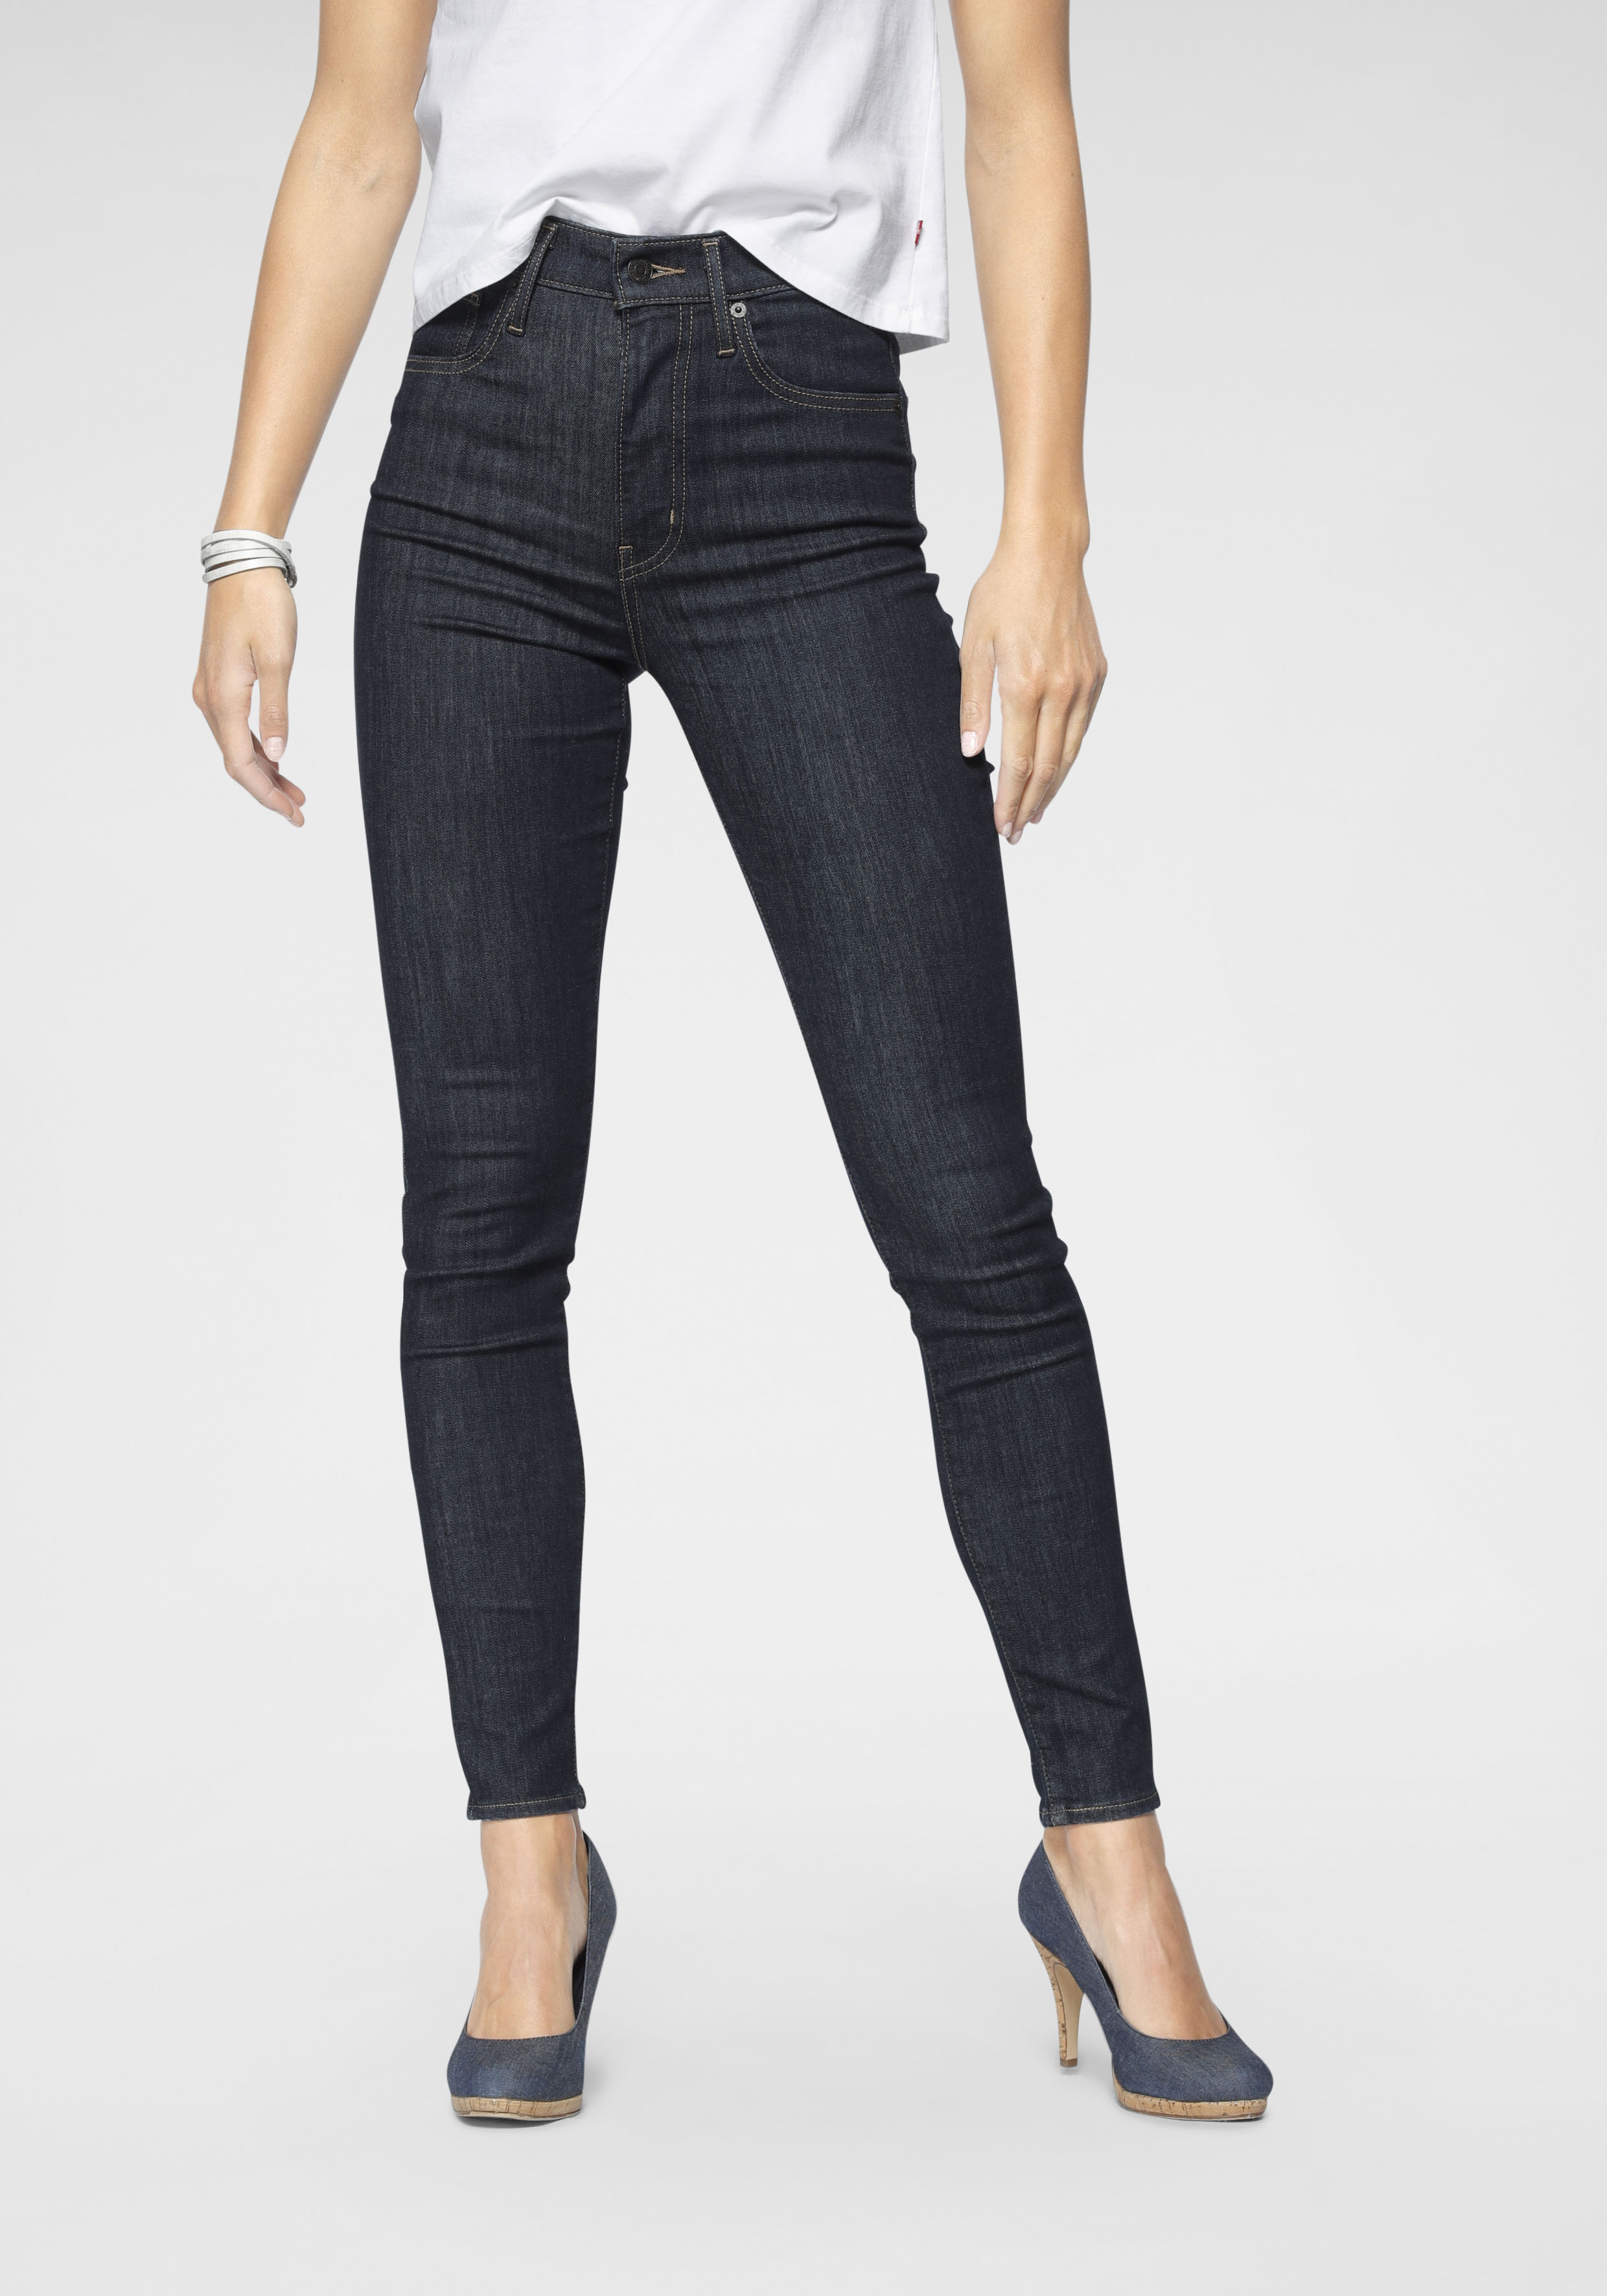 Levis Skinny-fit-Jeans "Mile High Super Skinny"